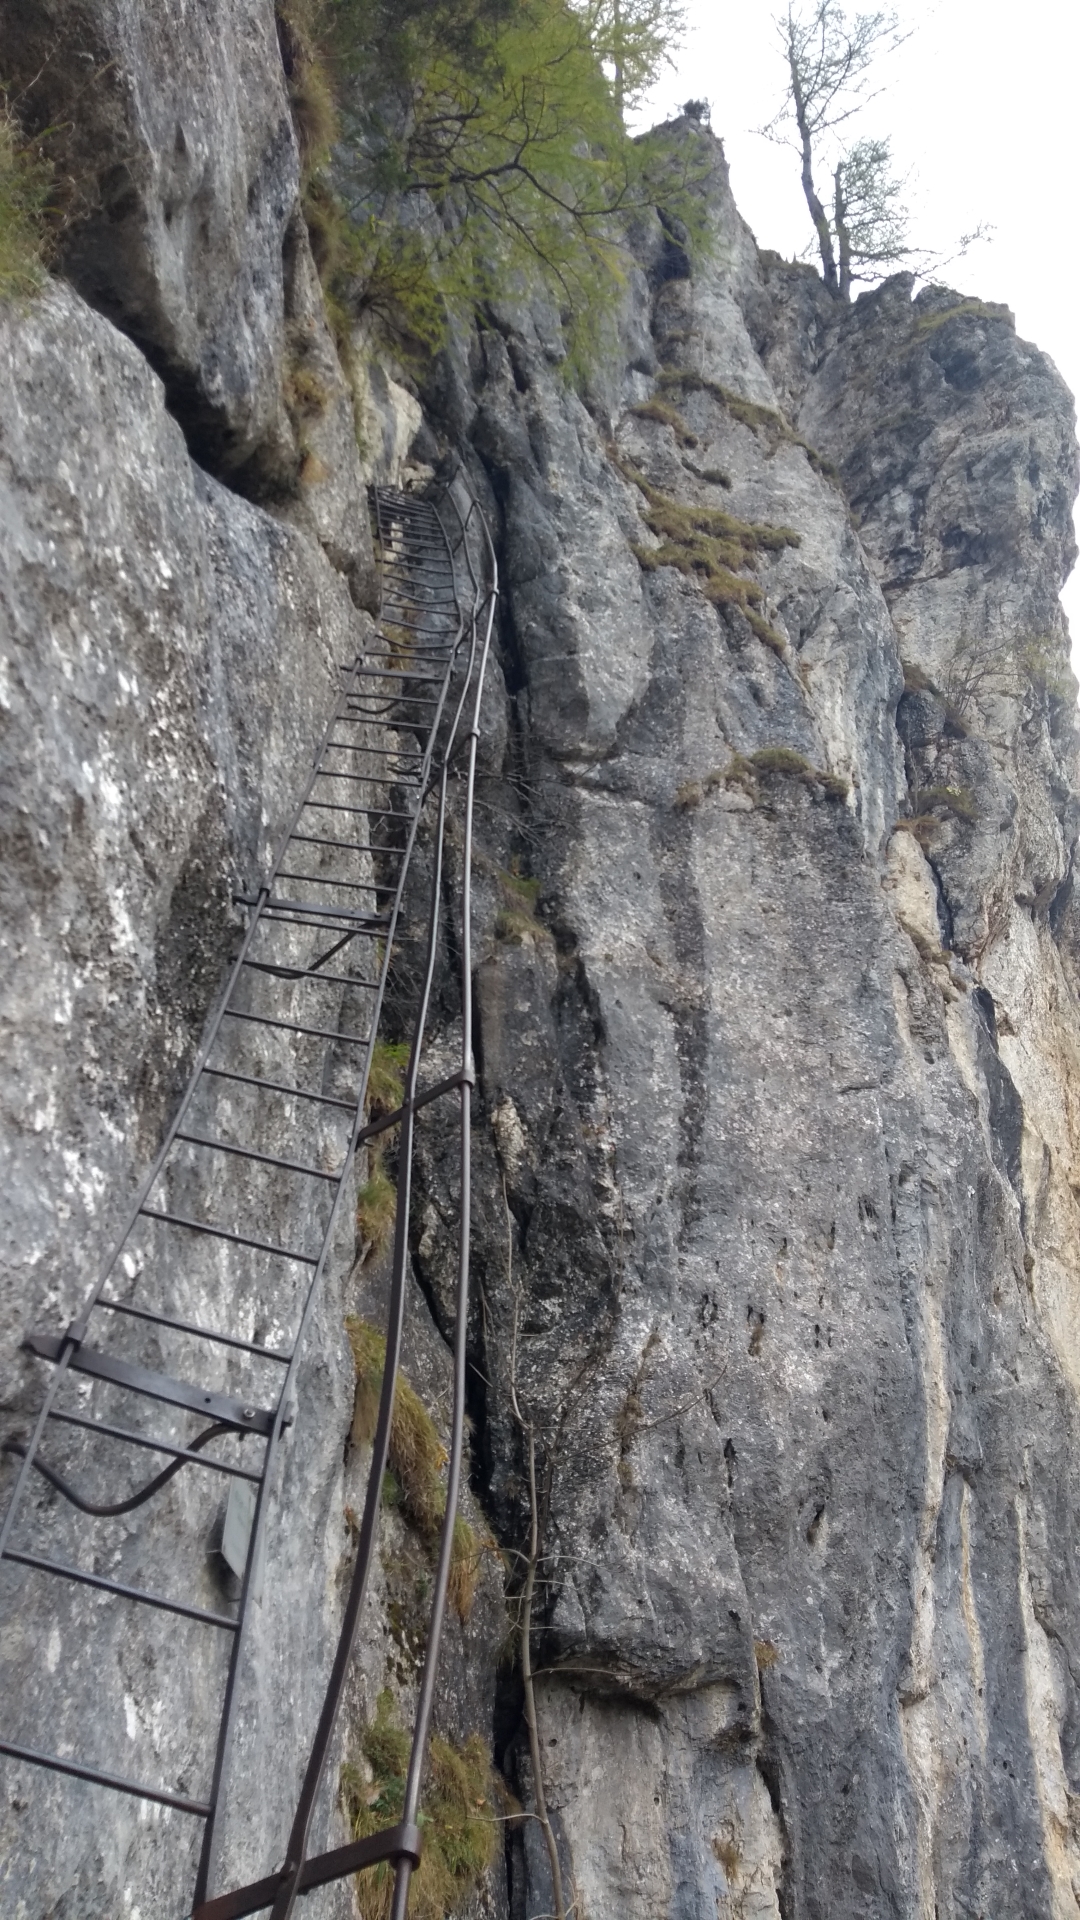 The long iron ladder marking the start of Alpenvereinssteig